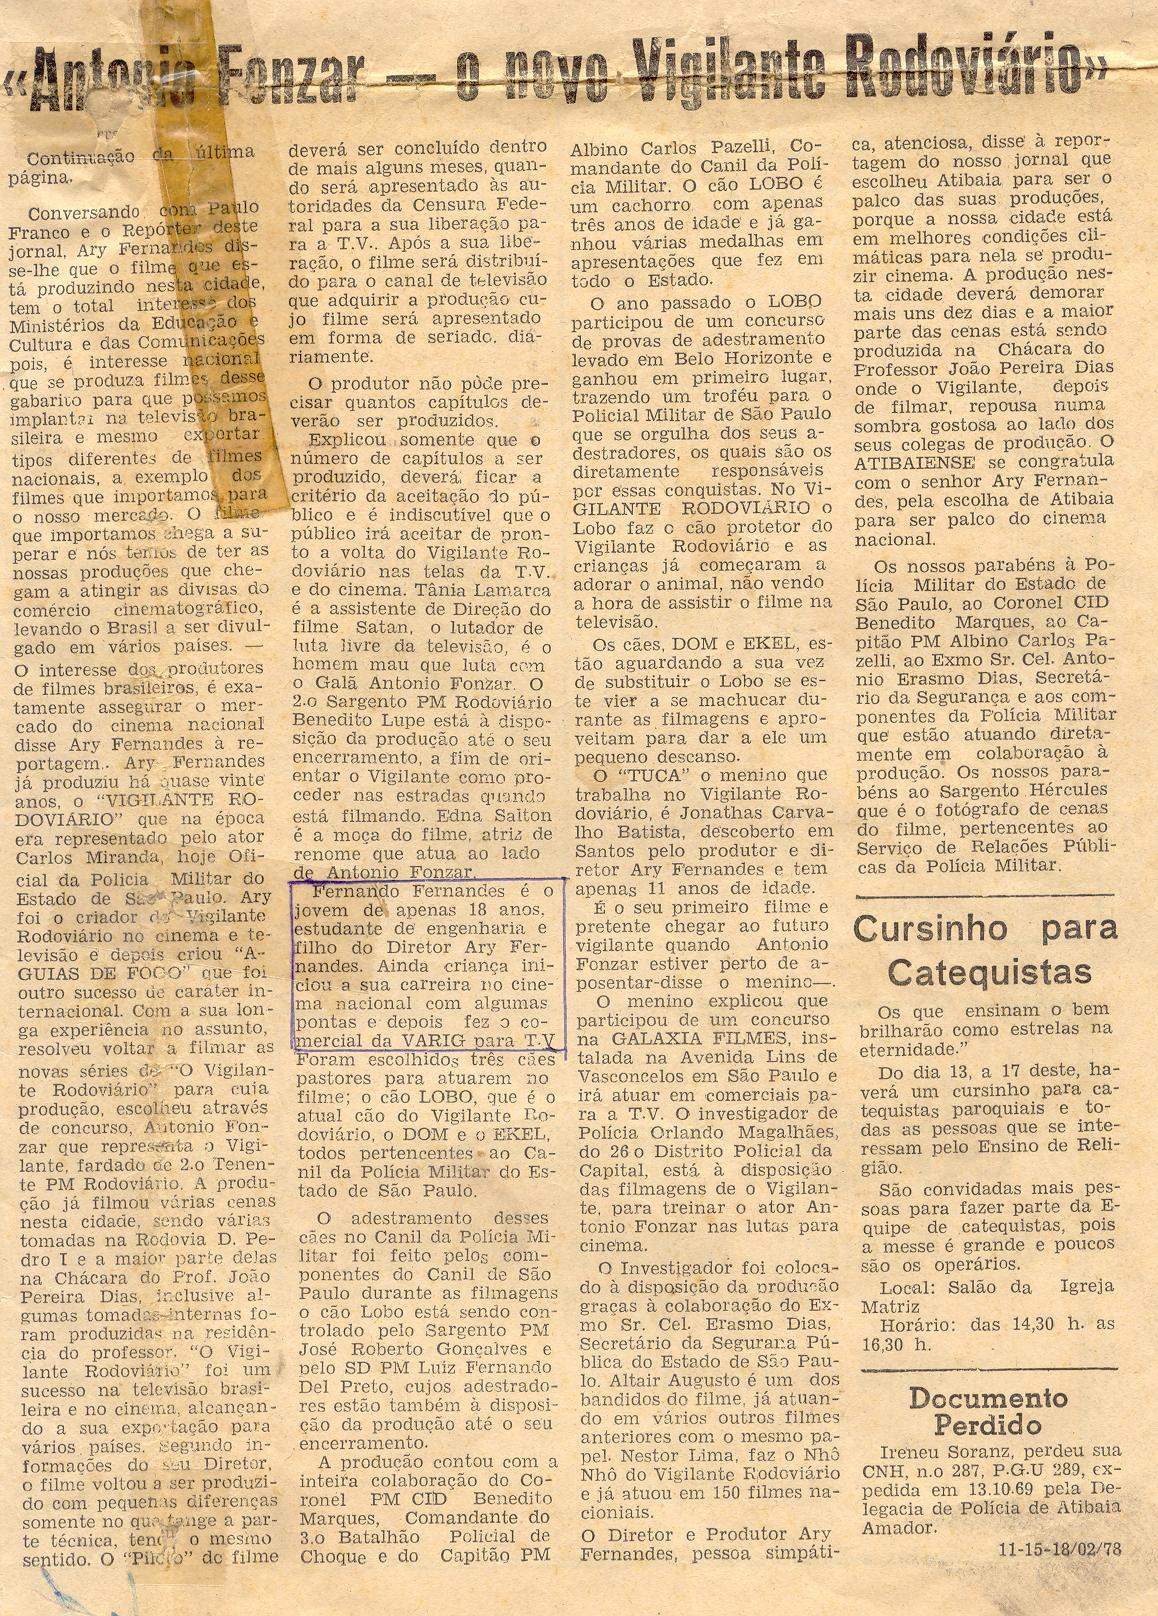 Segundo Vigilante Rodoviário de 1978  Jornal Atibaiense